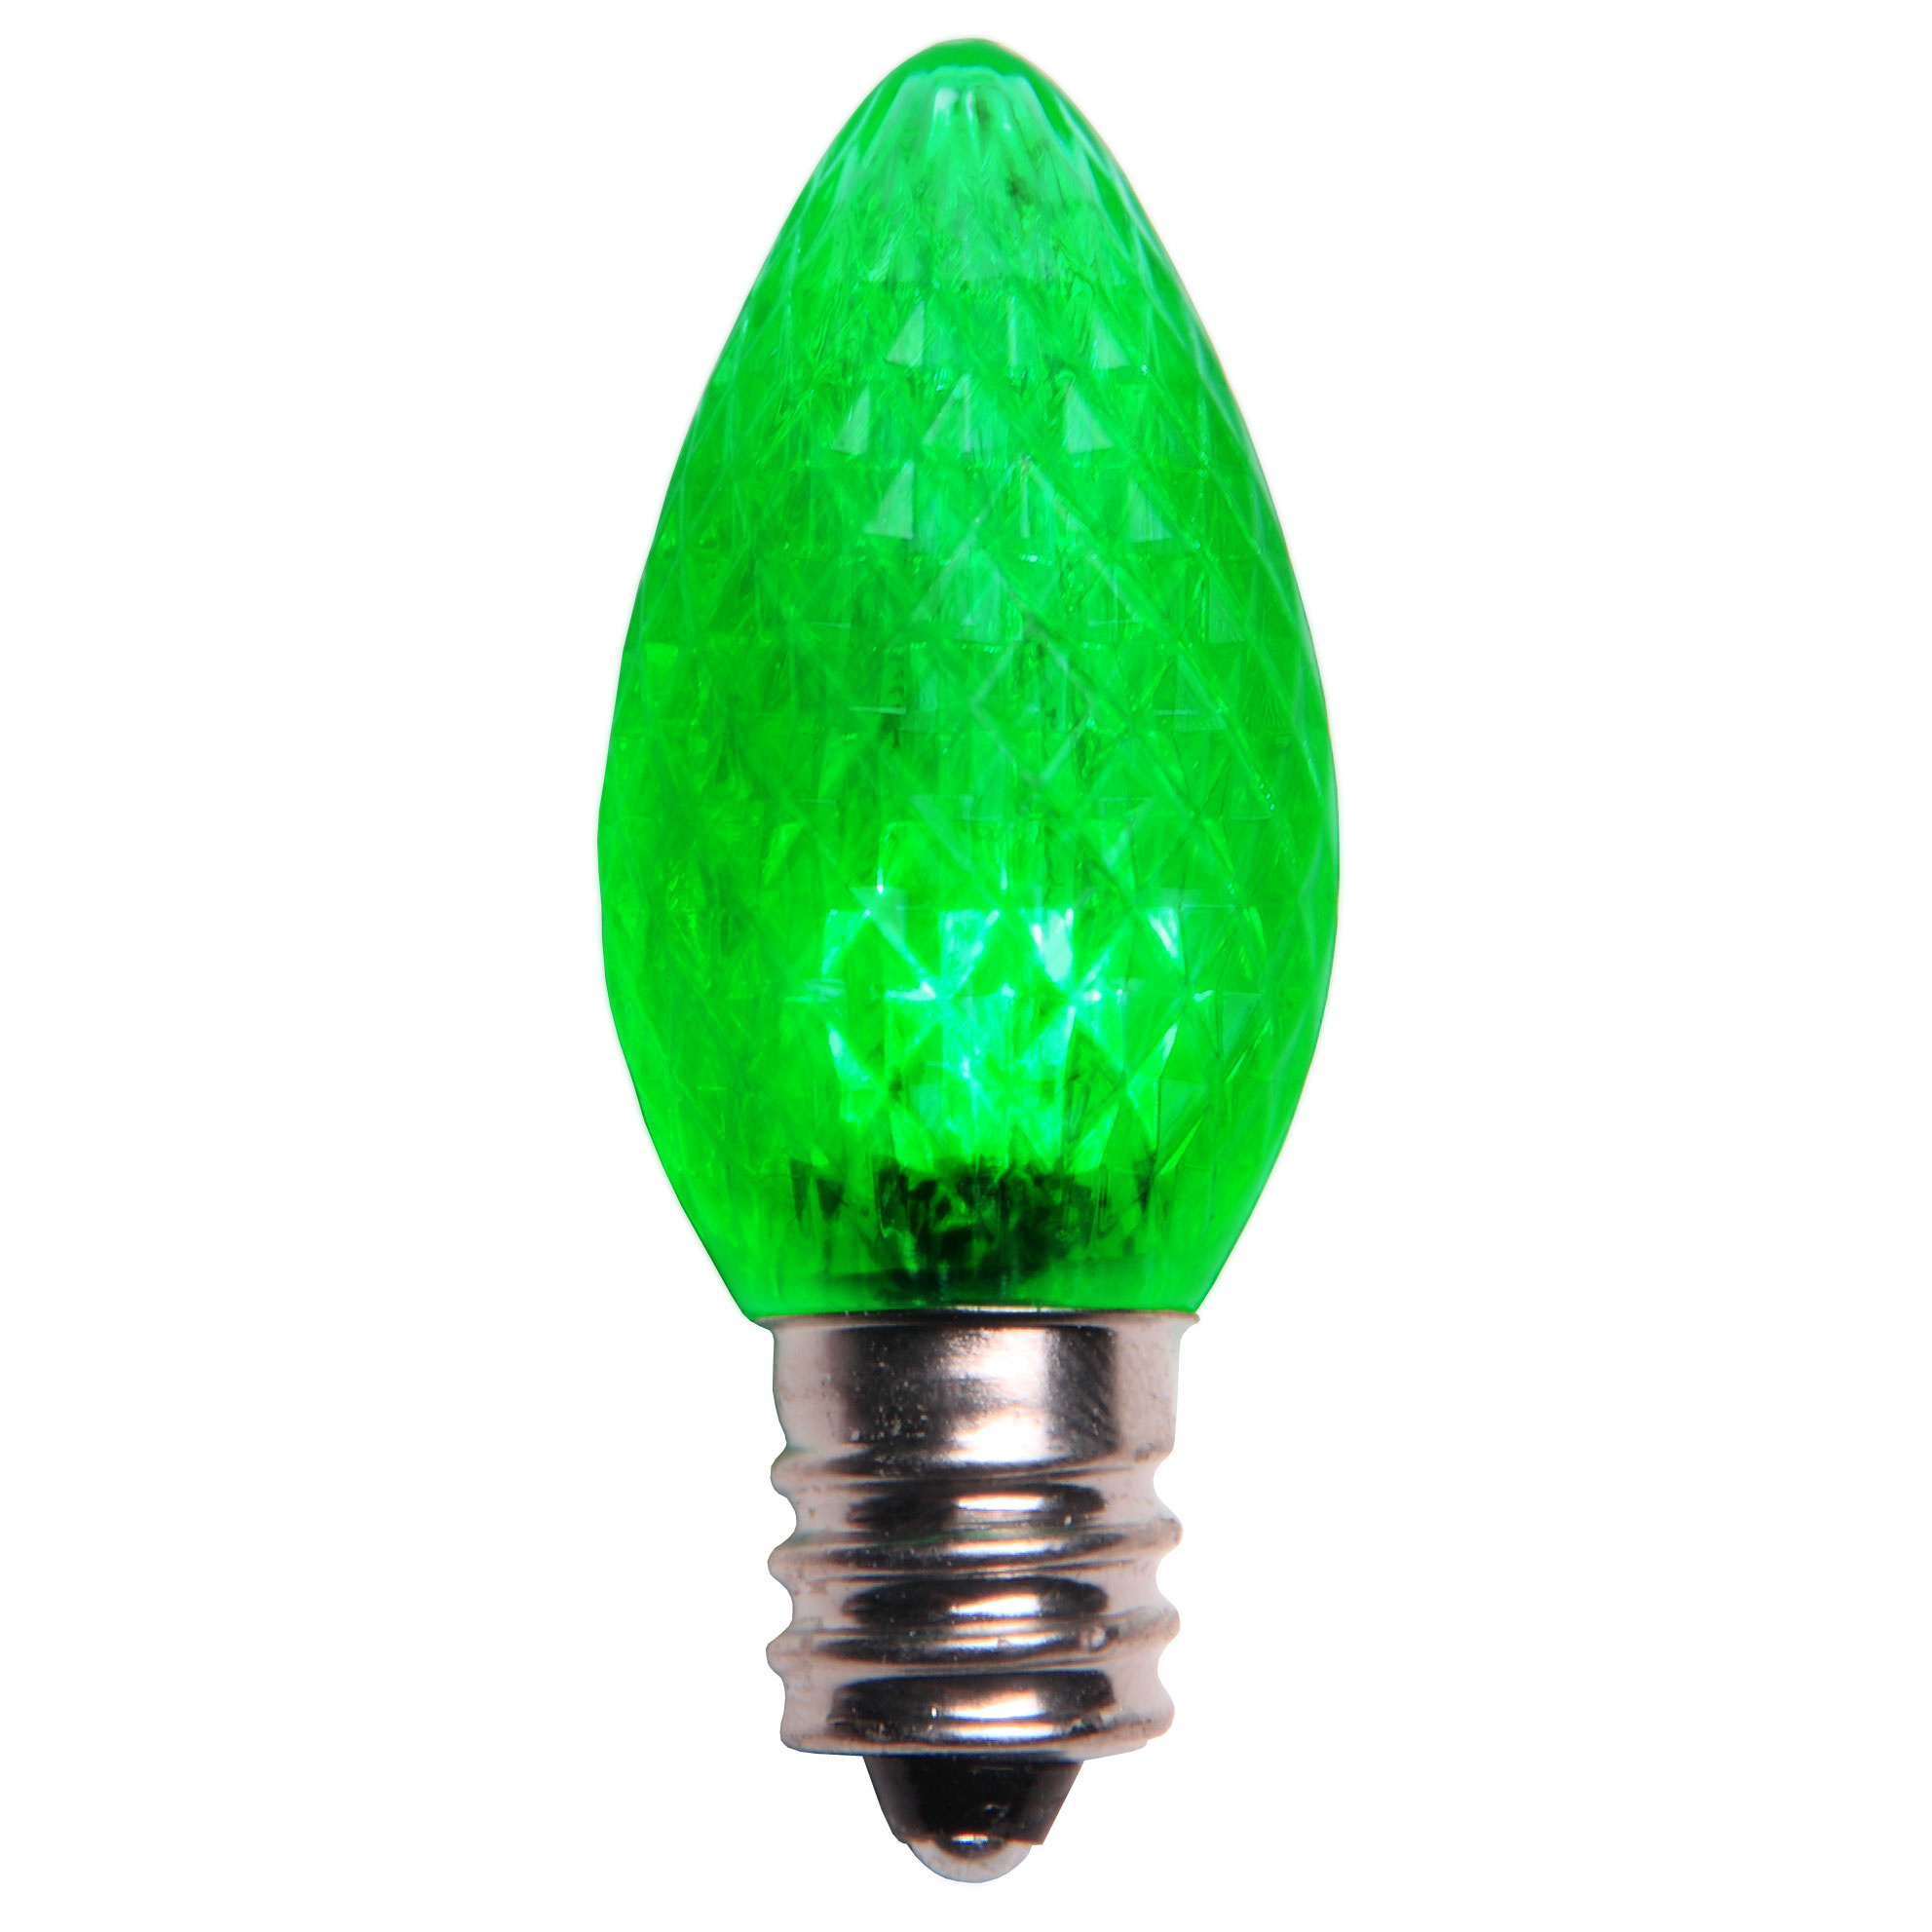 C7 Green LED Christmas Light Bulbs